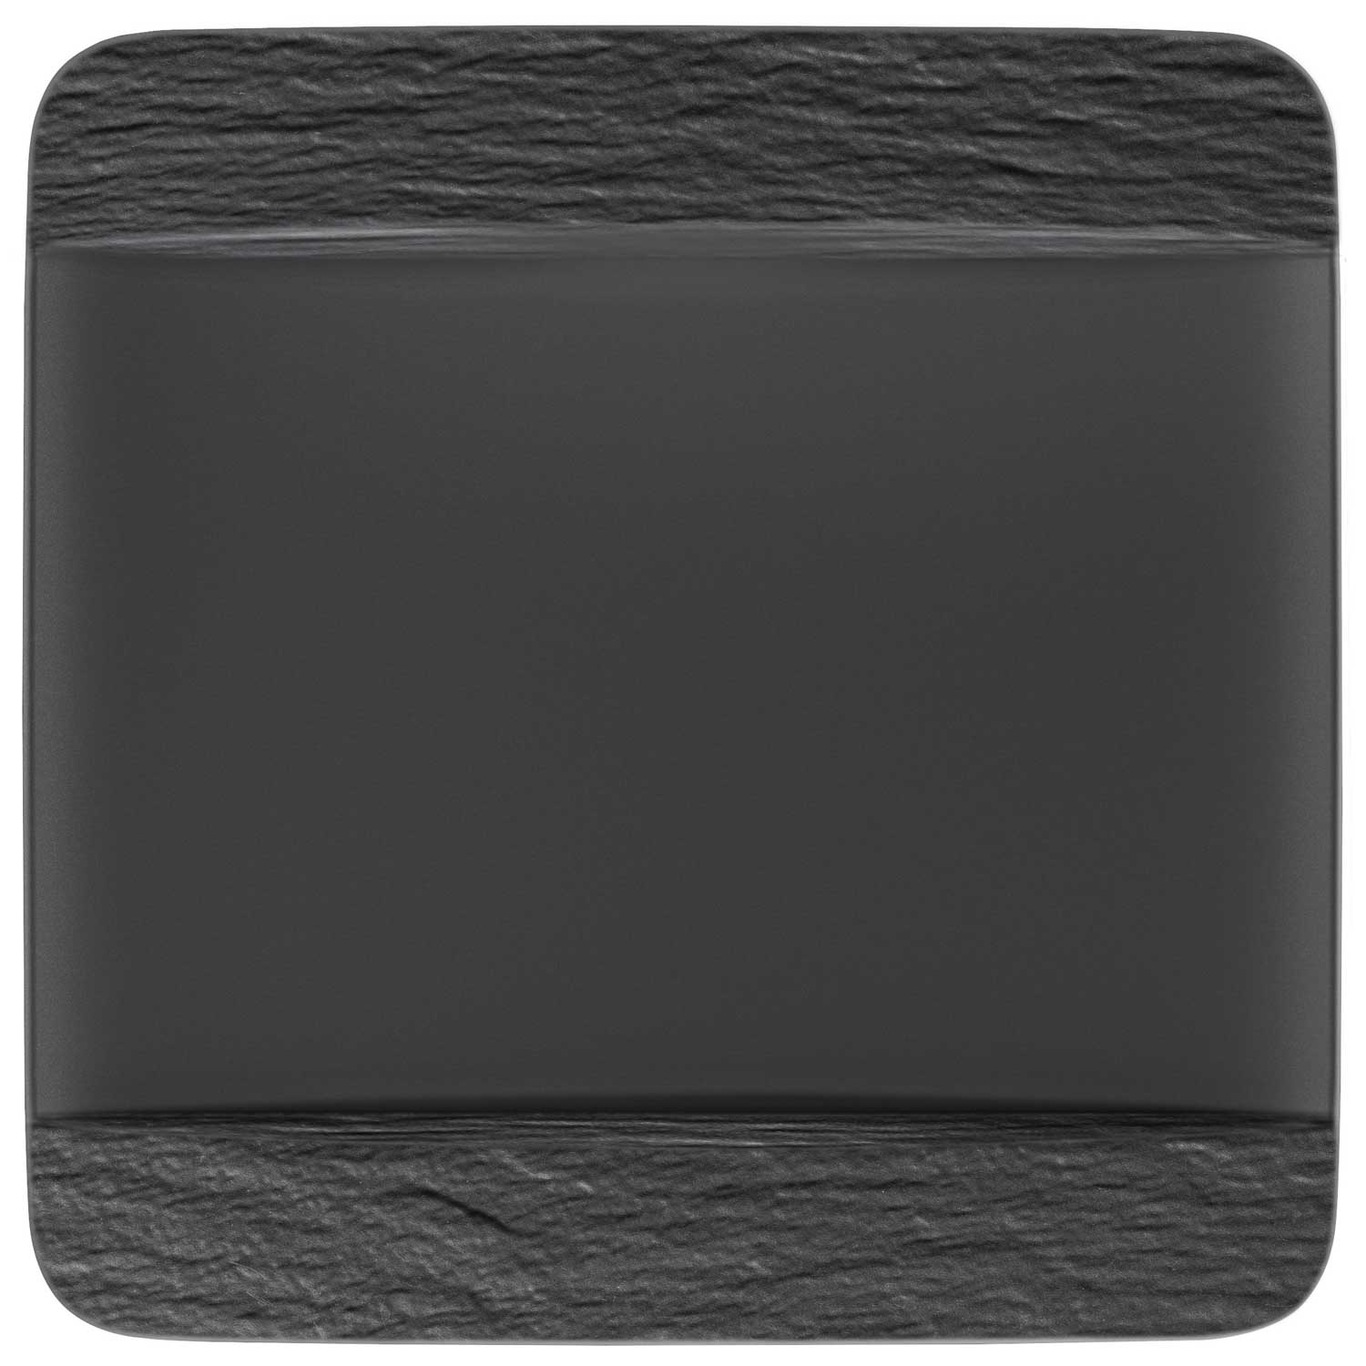 Manufacture Rock Squared Plate, Black 28 cm